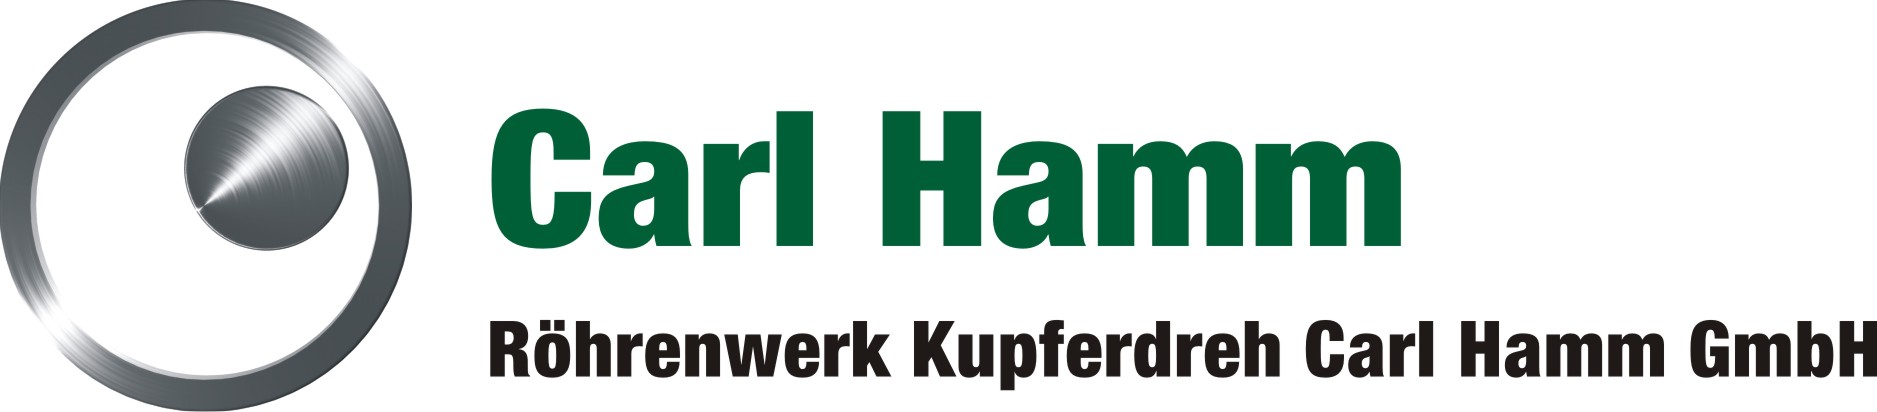 RÃ¶hrenwerk Kupferdreh Carl Hamm GmbH Logo